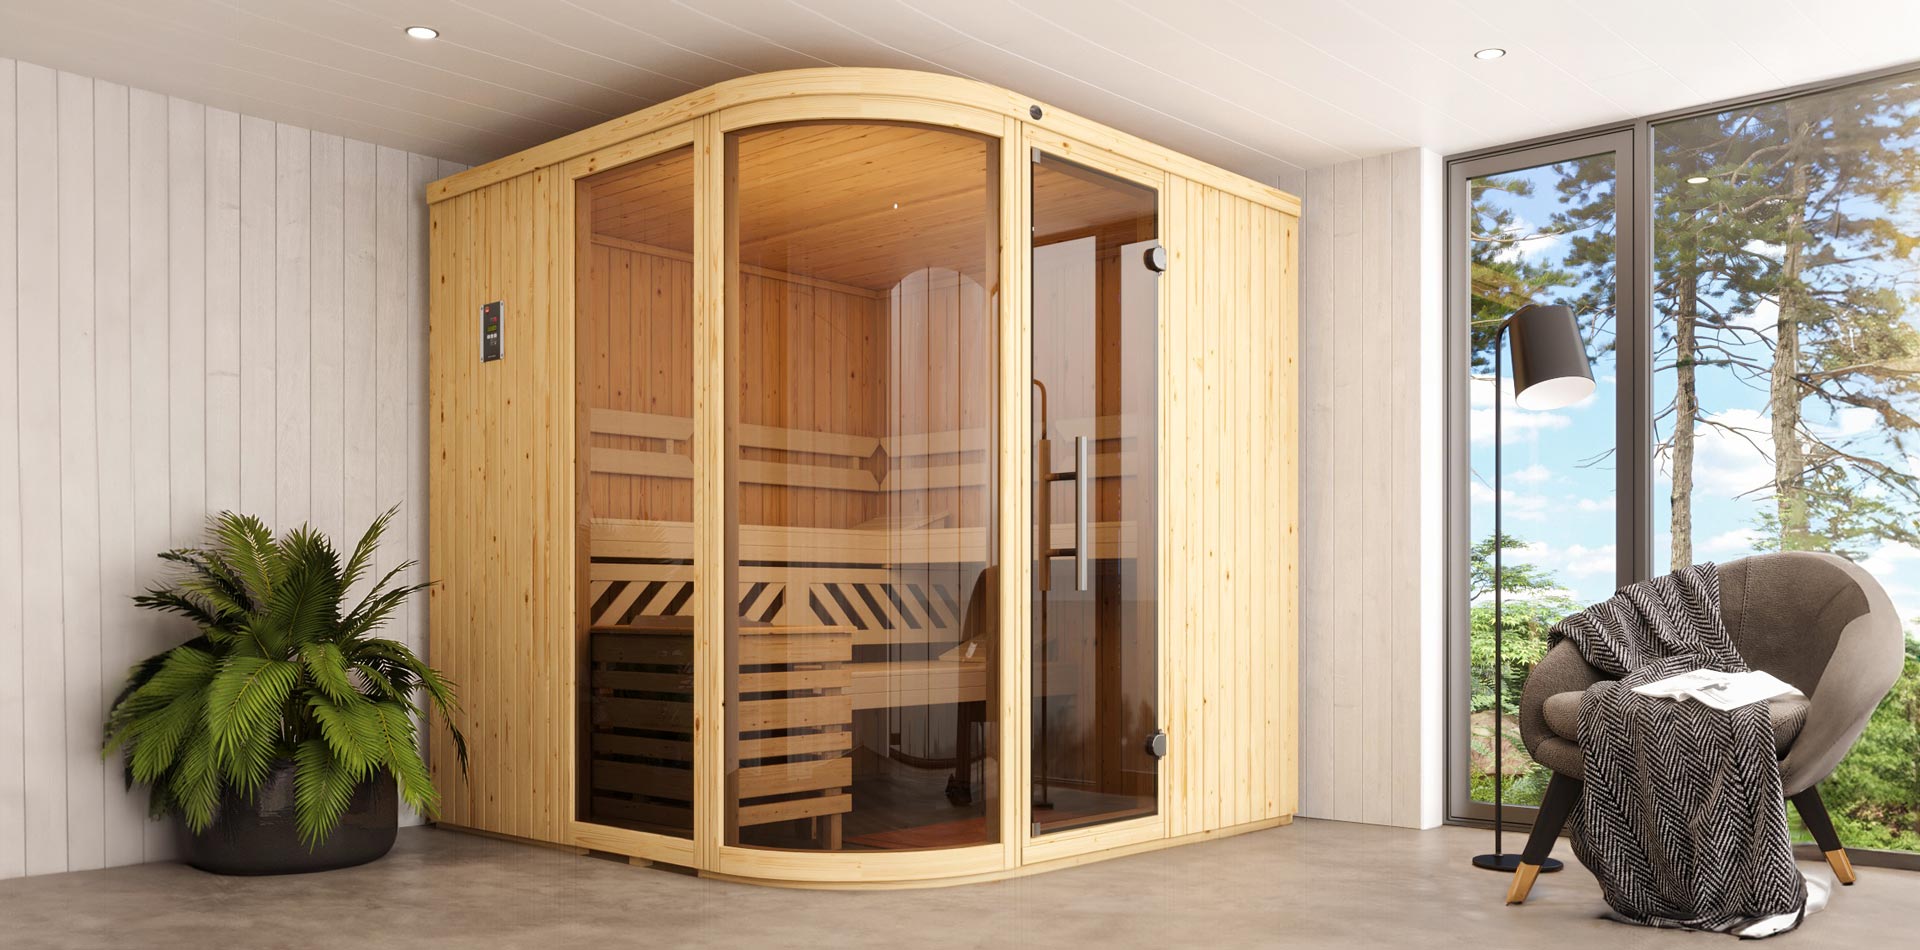 Eine Holzdesignsauna in einer Wohnzimmeratmosphäre, die Design Sauna ist nach vorne hin abgerundet und hat eine Glasfront